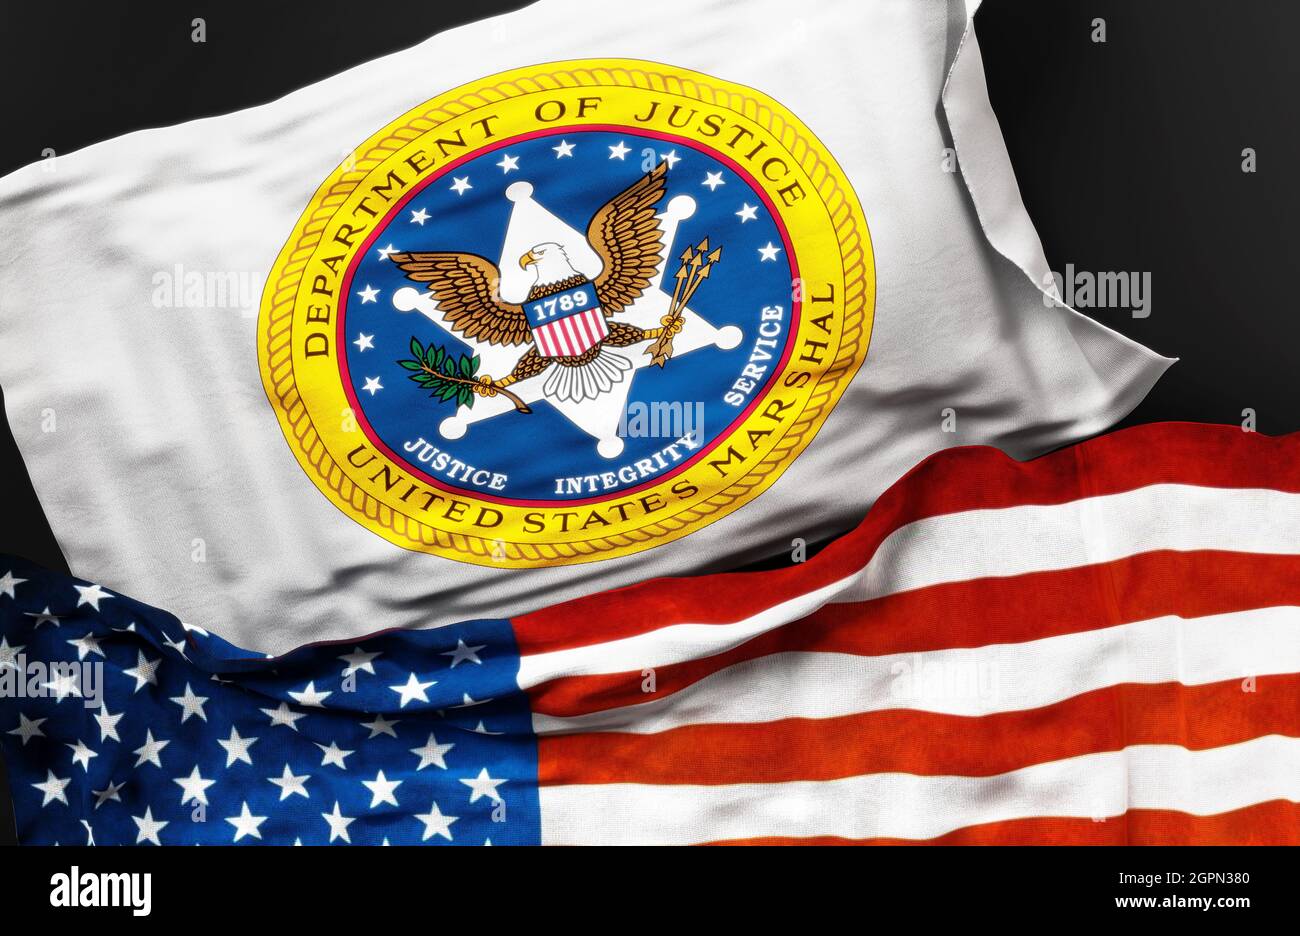 Flagge der United States Marshals Service Variante zusammen mit einer Flagge der Vereinigten Staaten von Amerika als Symbol für eine Verbindung zwischen ihnen, 3d-illu Stockfoto